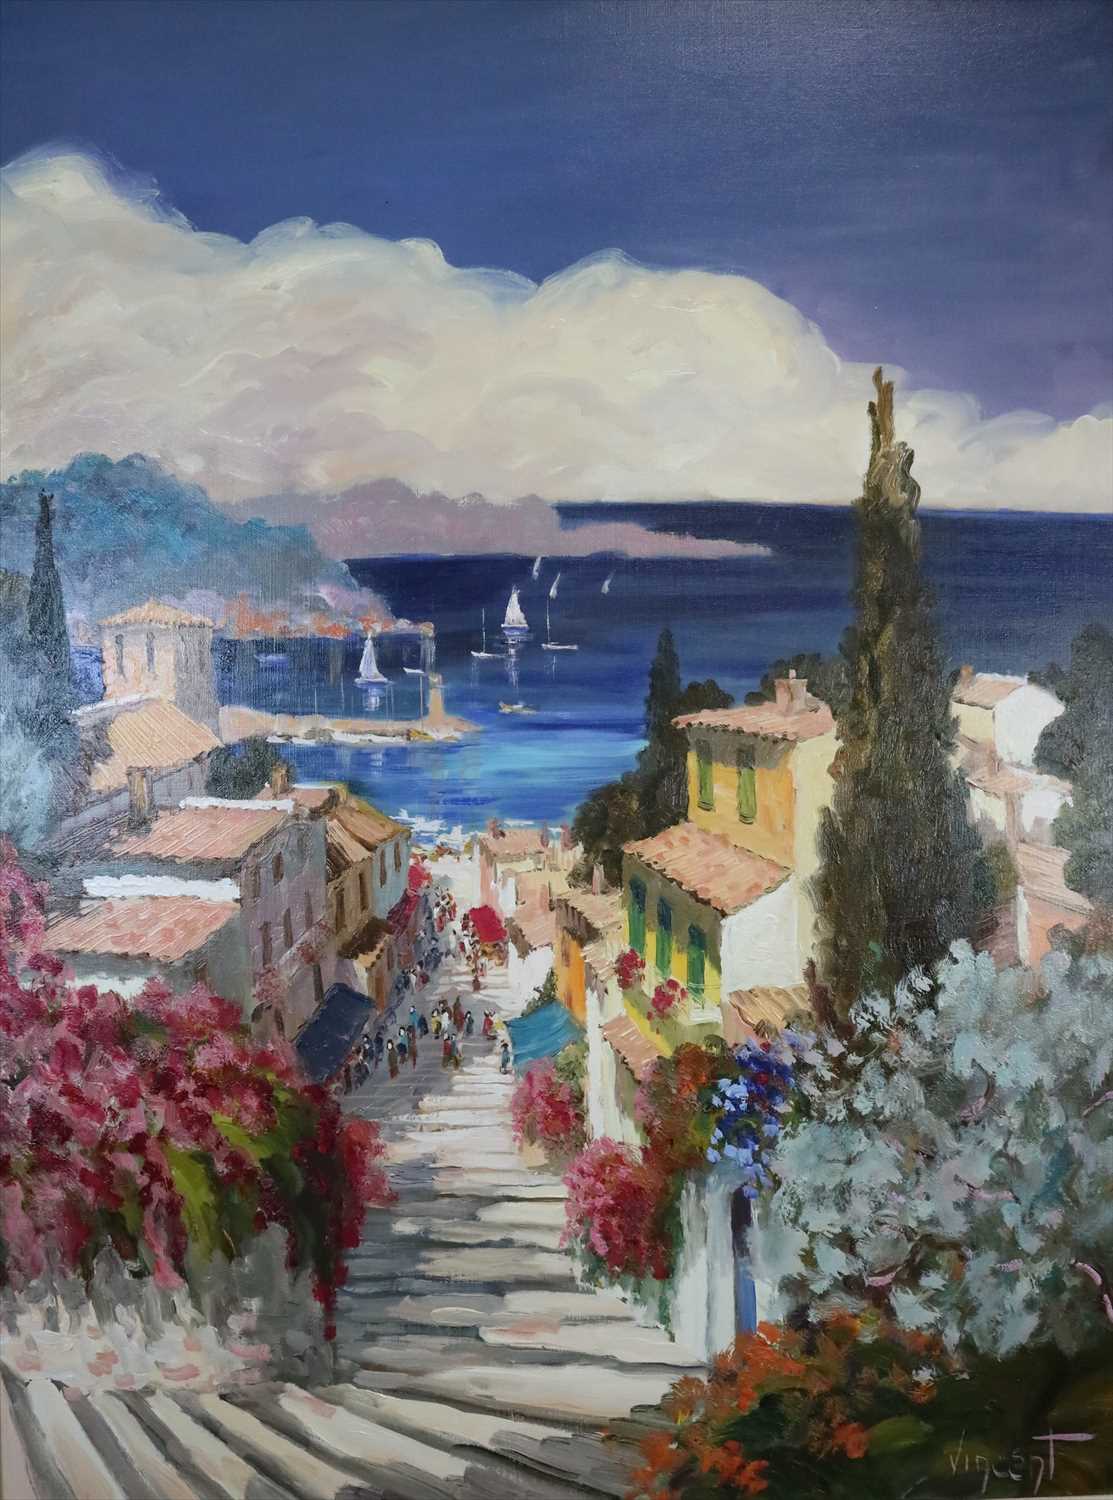 Lot 3 - Vincent (French Contemporary), L'Escalier du Port, Riviera